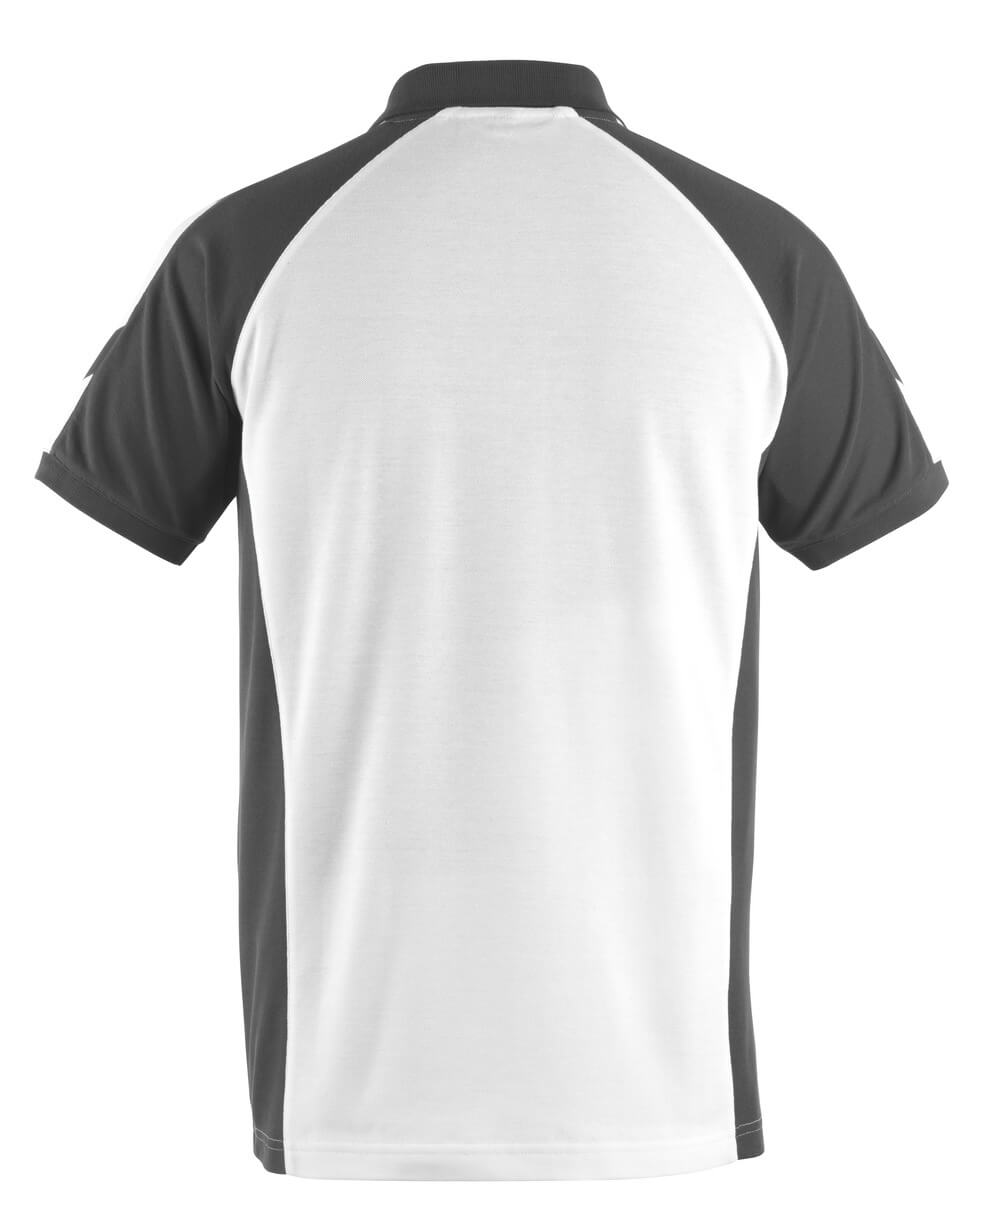 Mascot UNIQUE  Bottrop Polo shirt 50569 white/dark anthracite